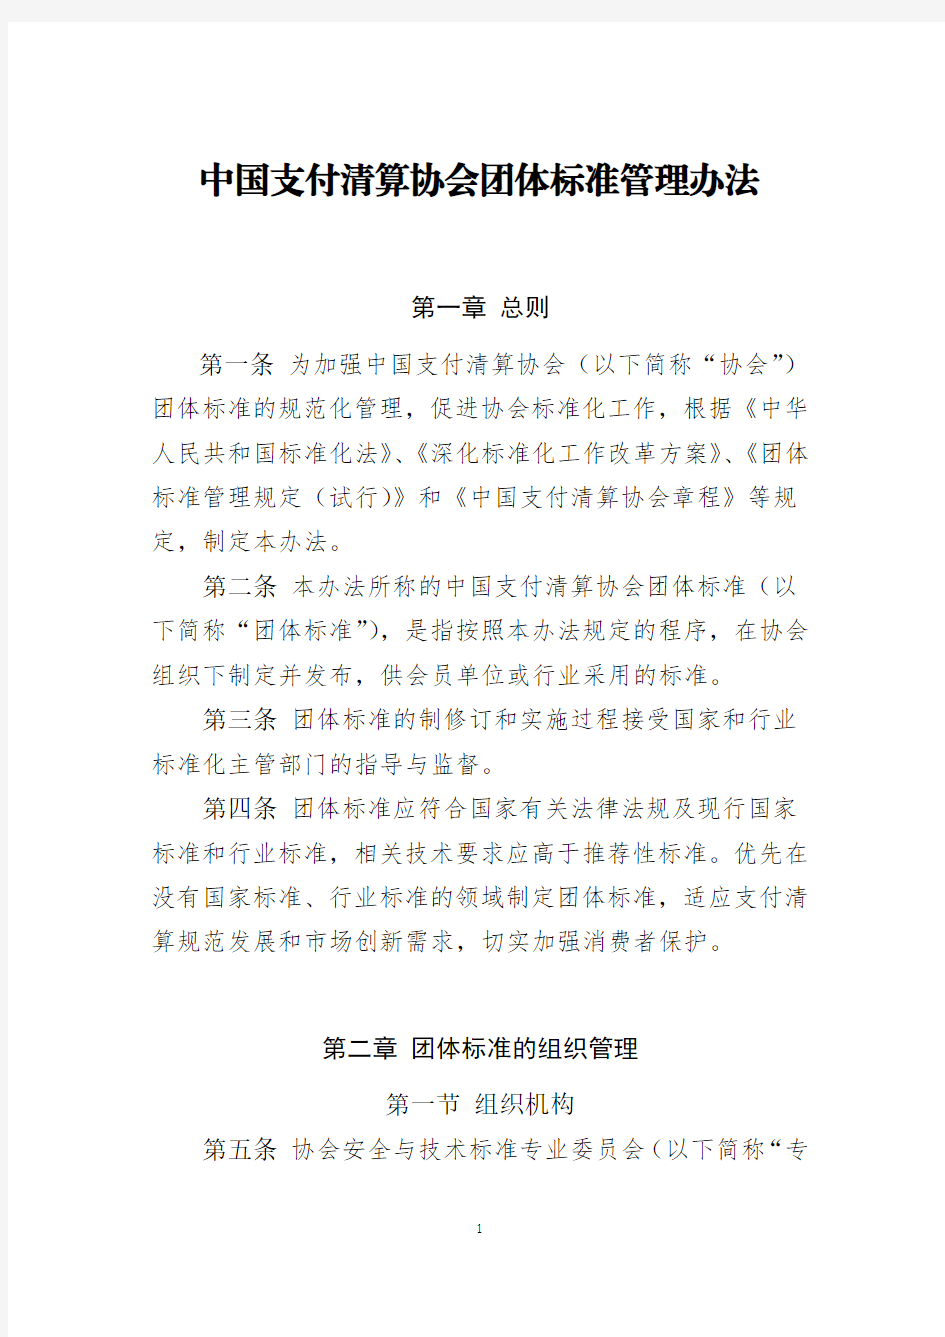 中国支付清算协会团体标准管理办法